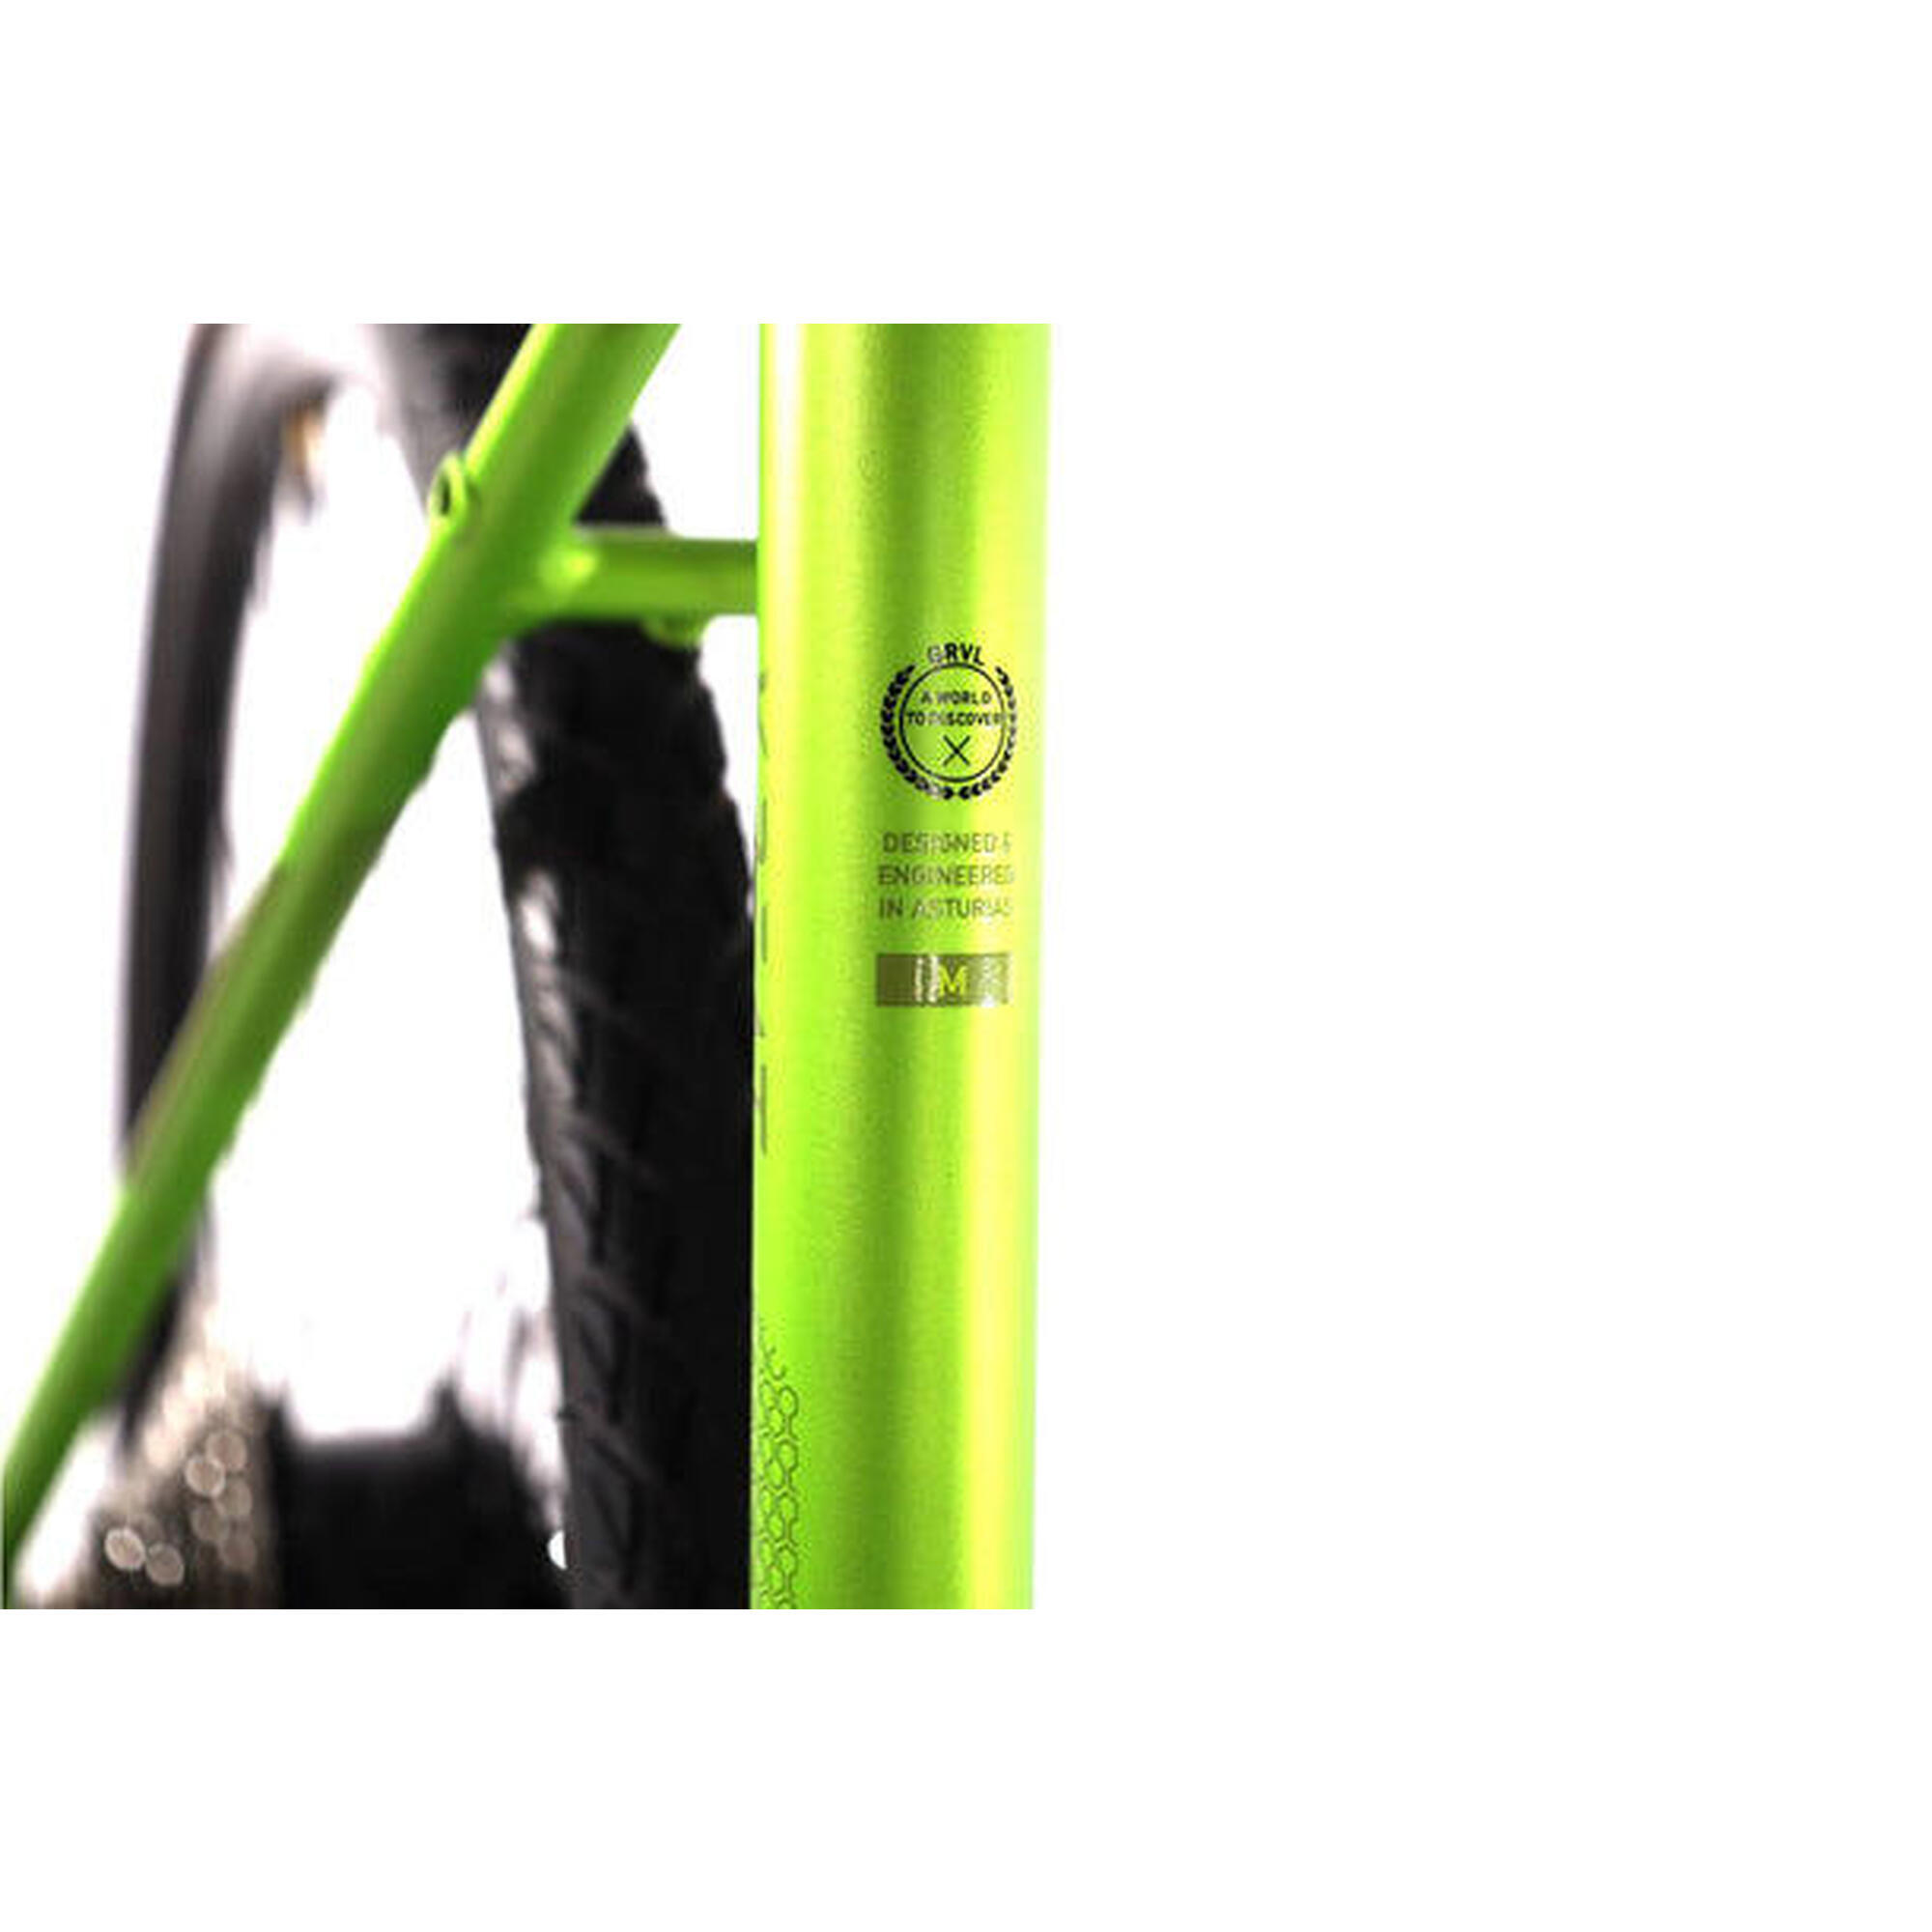 Refurbished – E-Bike MMR X-Beat 0  - SEHR GUT